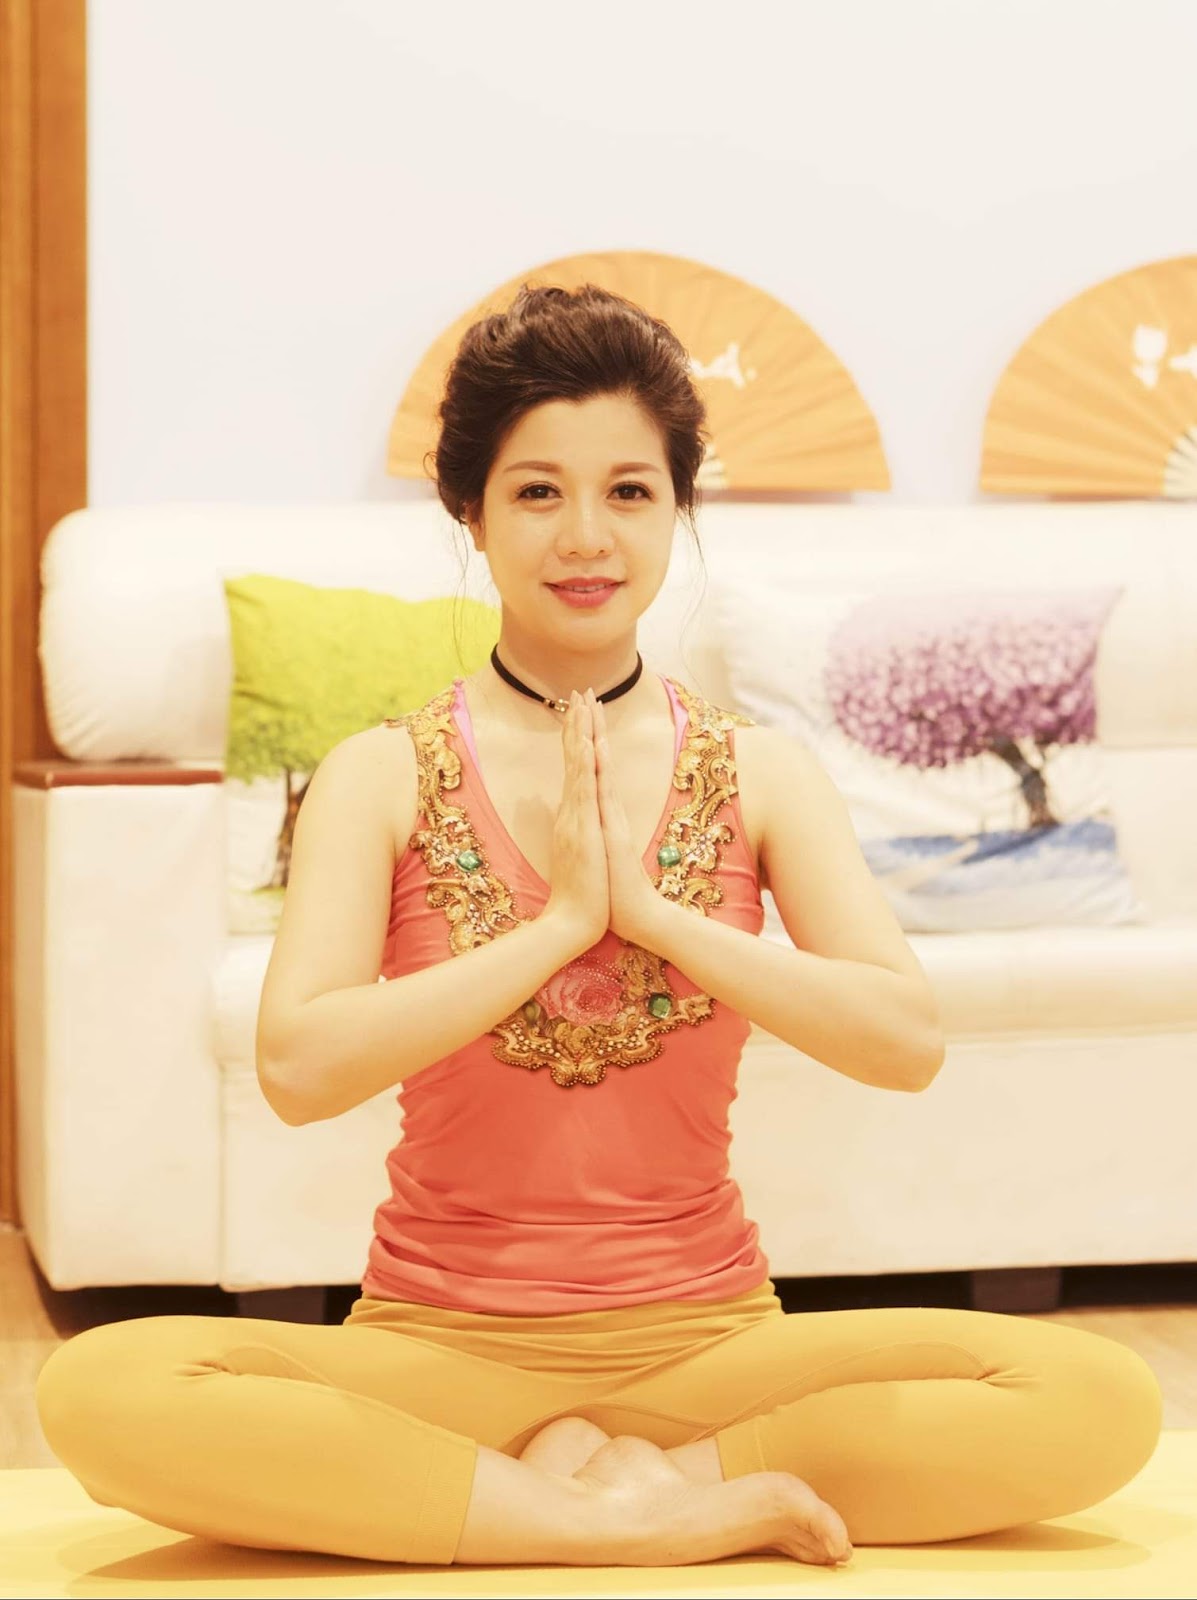 Nguyễn Hiếu và câu chuyện đơn giản hóa nghệ thuật yoga cho mọi người - Ảnh 1.